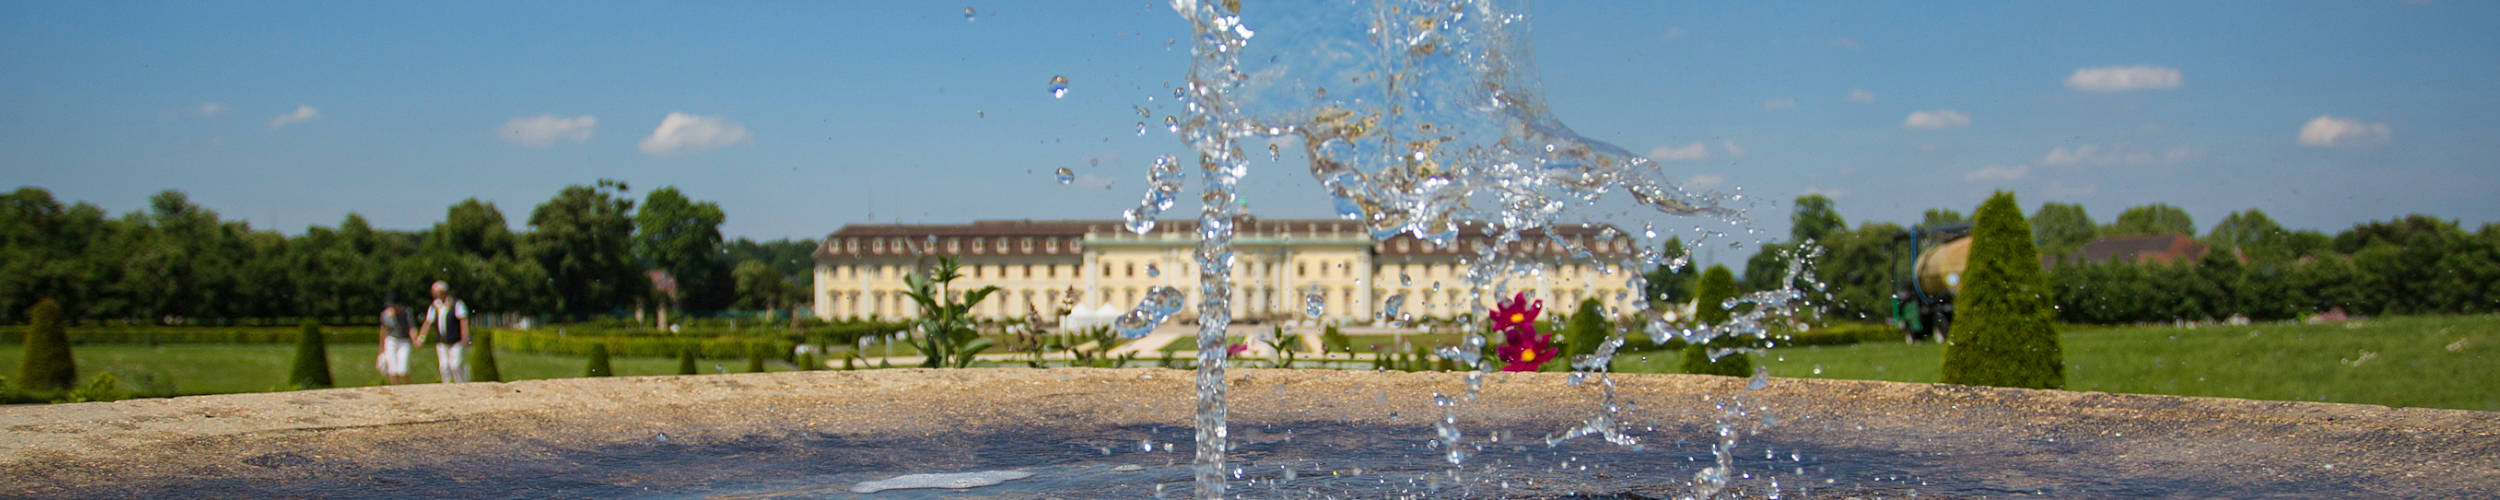 Springbrunnen vor dem Residenzschloss.